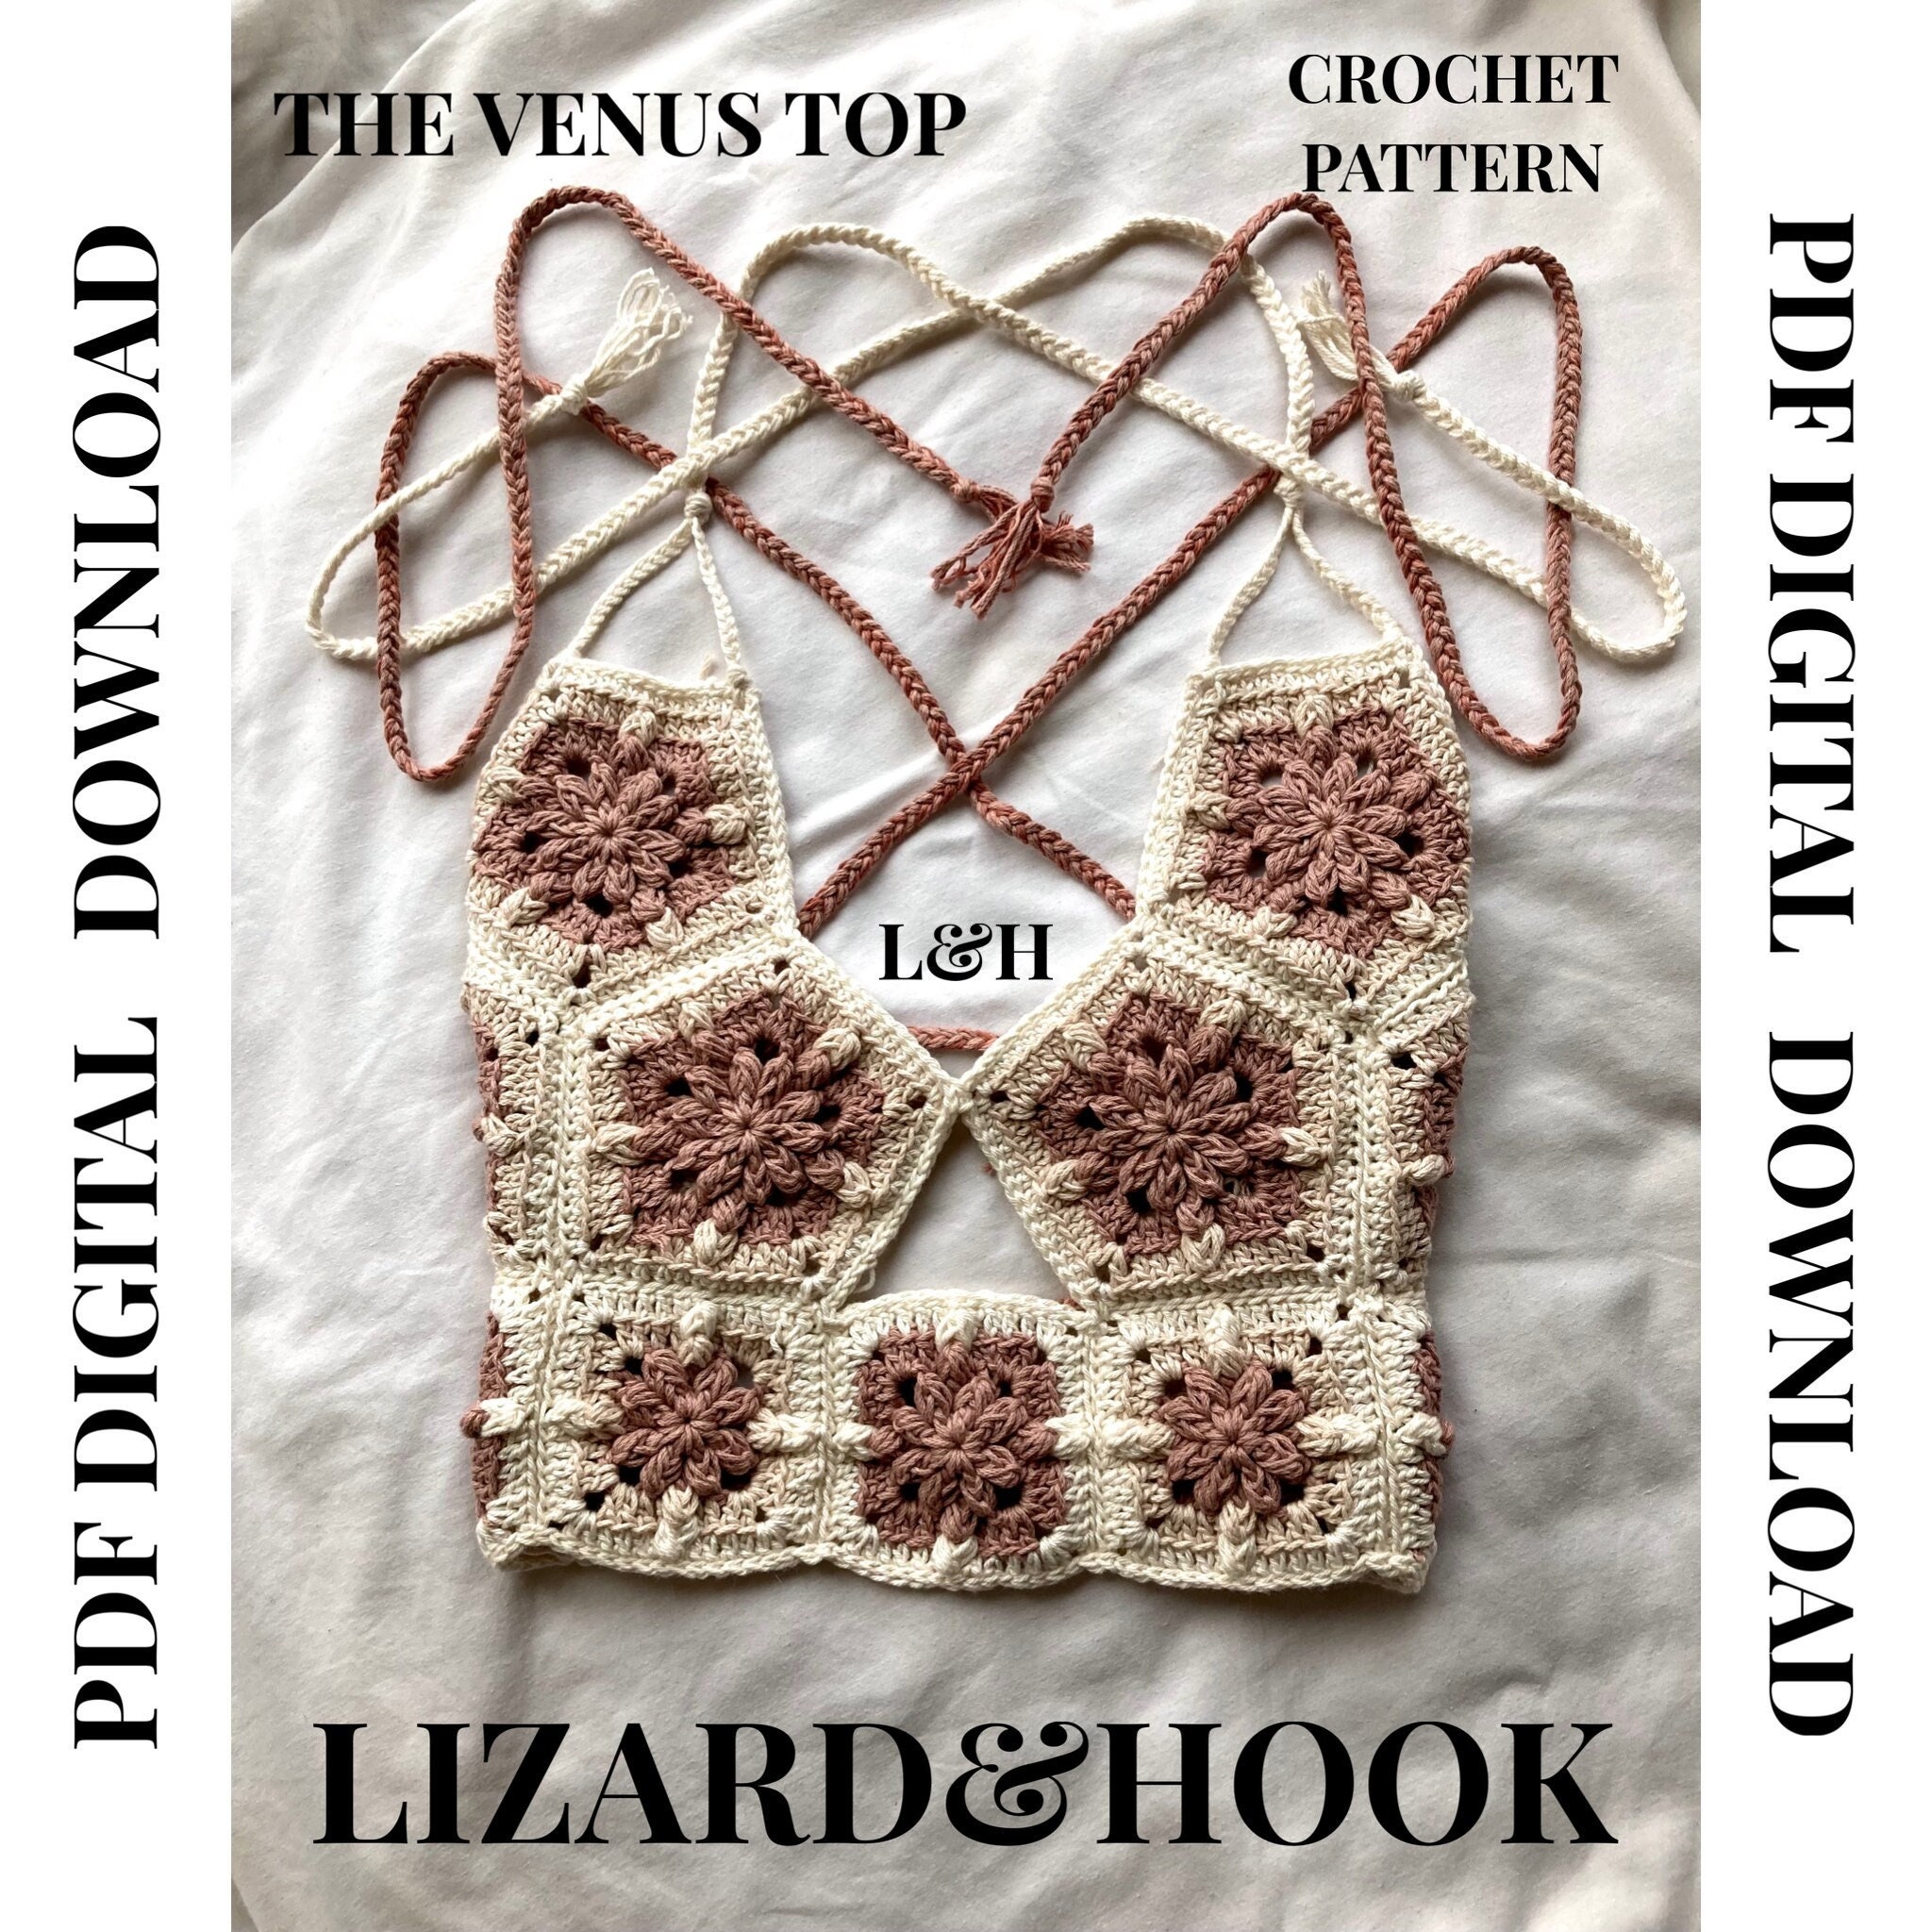 The Venus Top Pattern Crochet Top PATTERN Crochet PDF Lizard&hook 